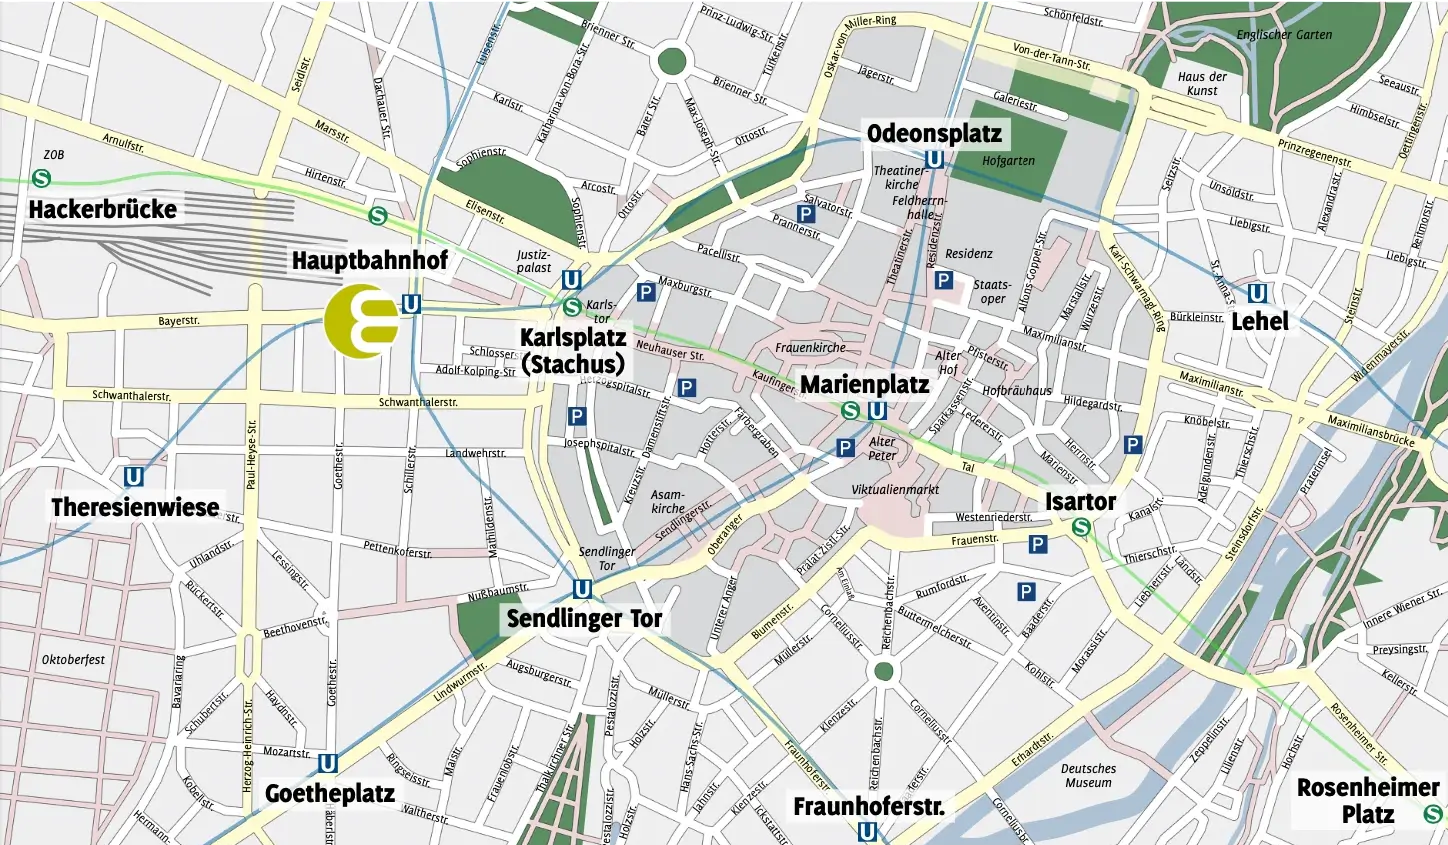 City map Munich with the location Hotel Europaeischer Hof